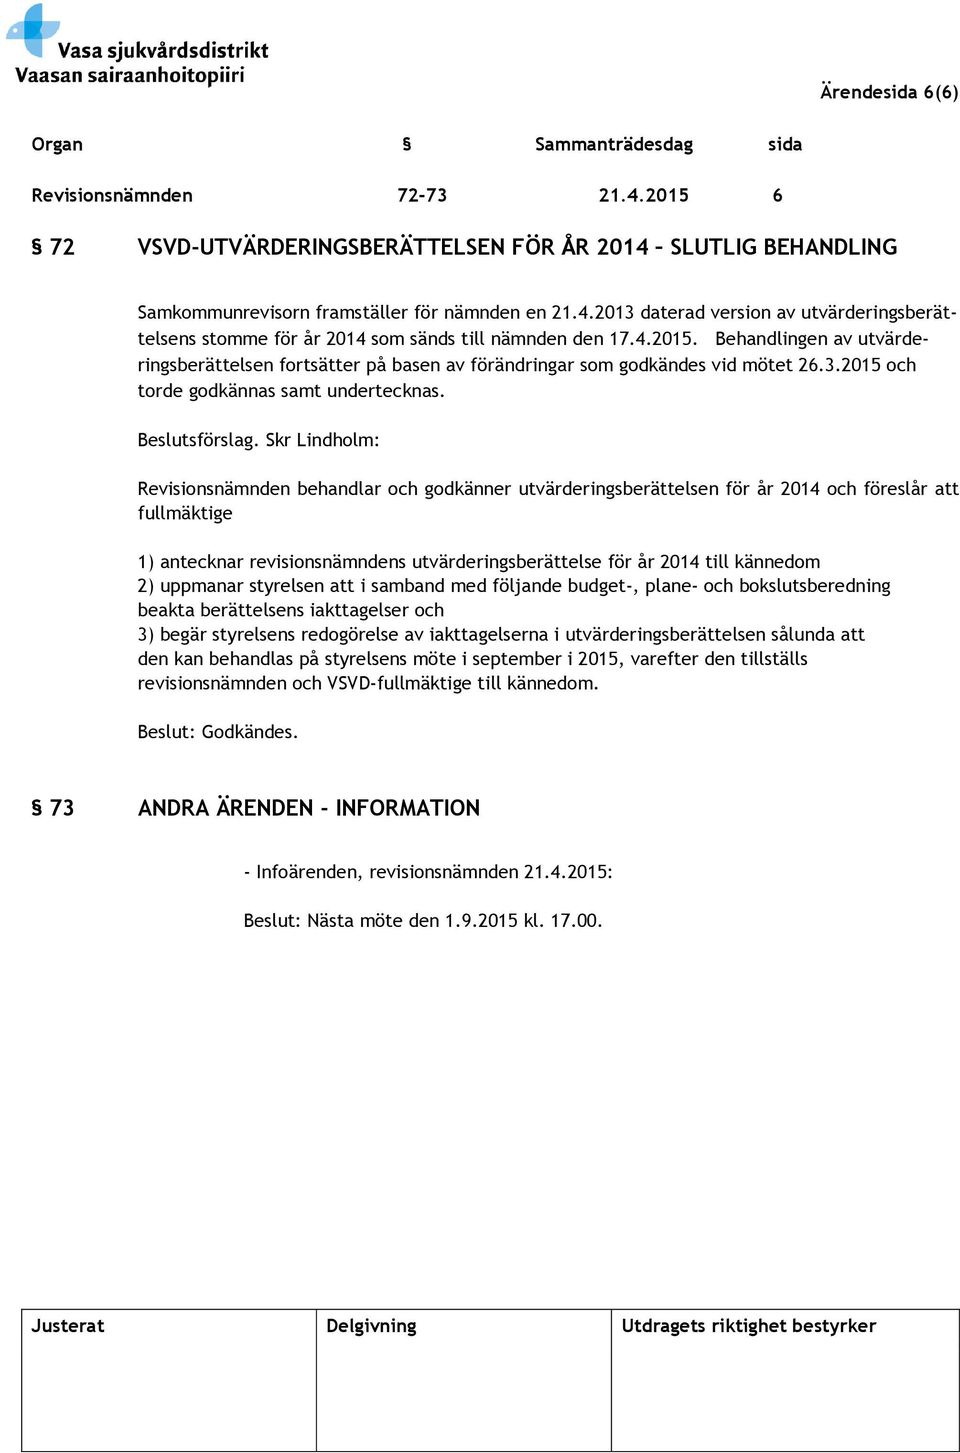 Skr Lindholm: Revisionsnämnden behandlar och godkänner utvärderingsberättelsen för år 2014 och föreslår att fullmäktige 1) antecknar revisionsnämndens utvärderingsberättelse för år 2014 till kännedom